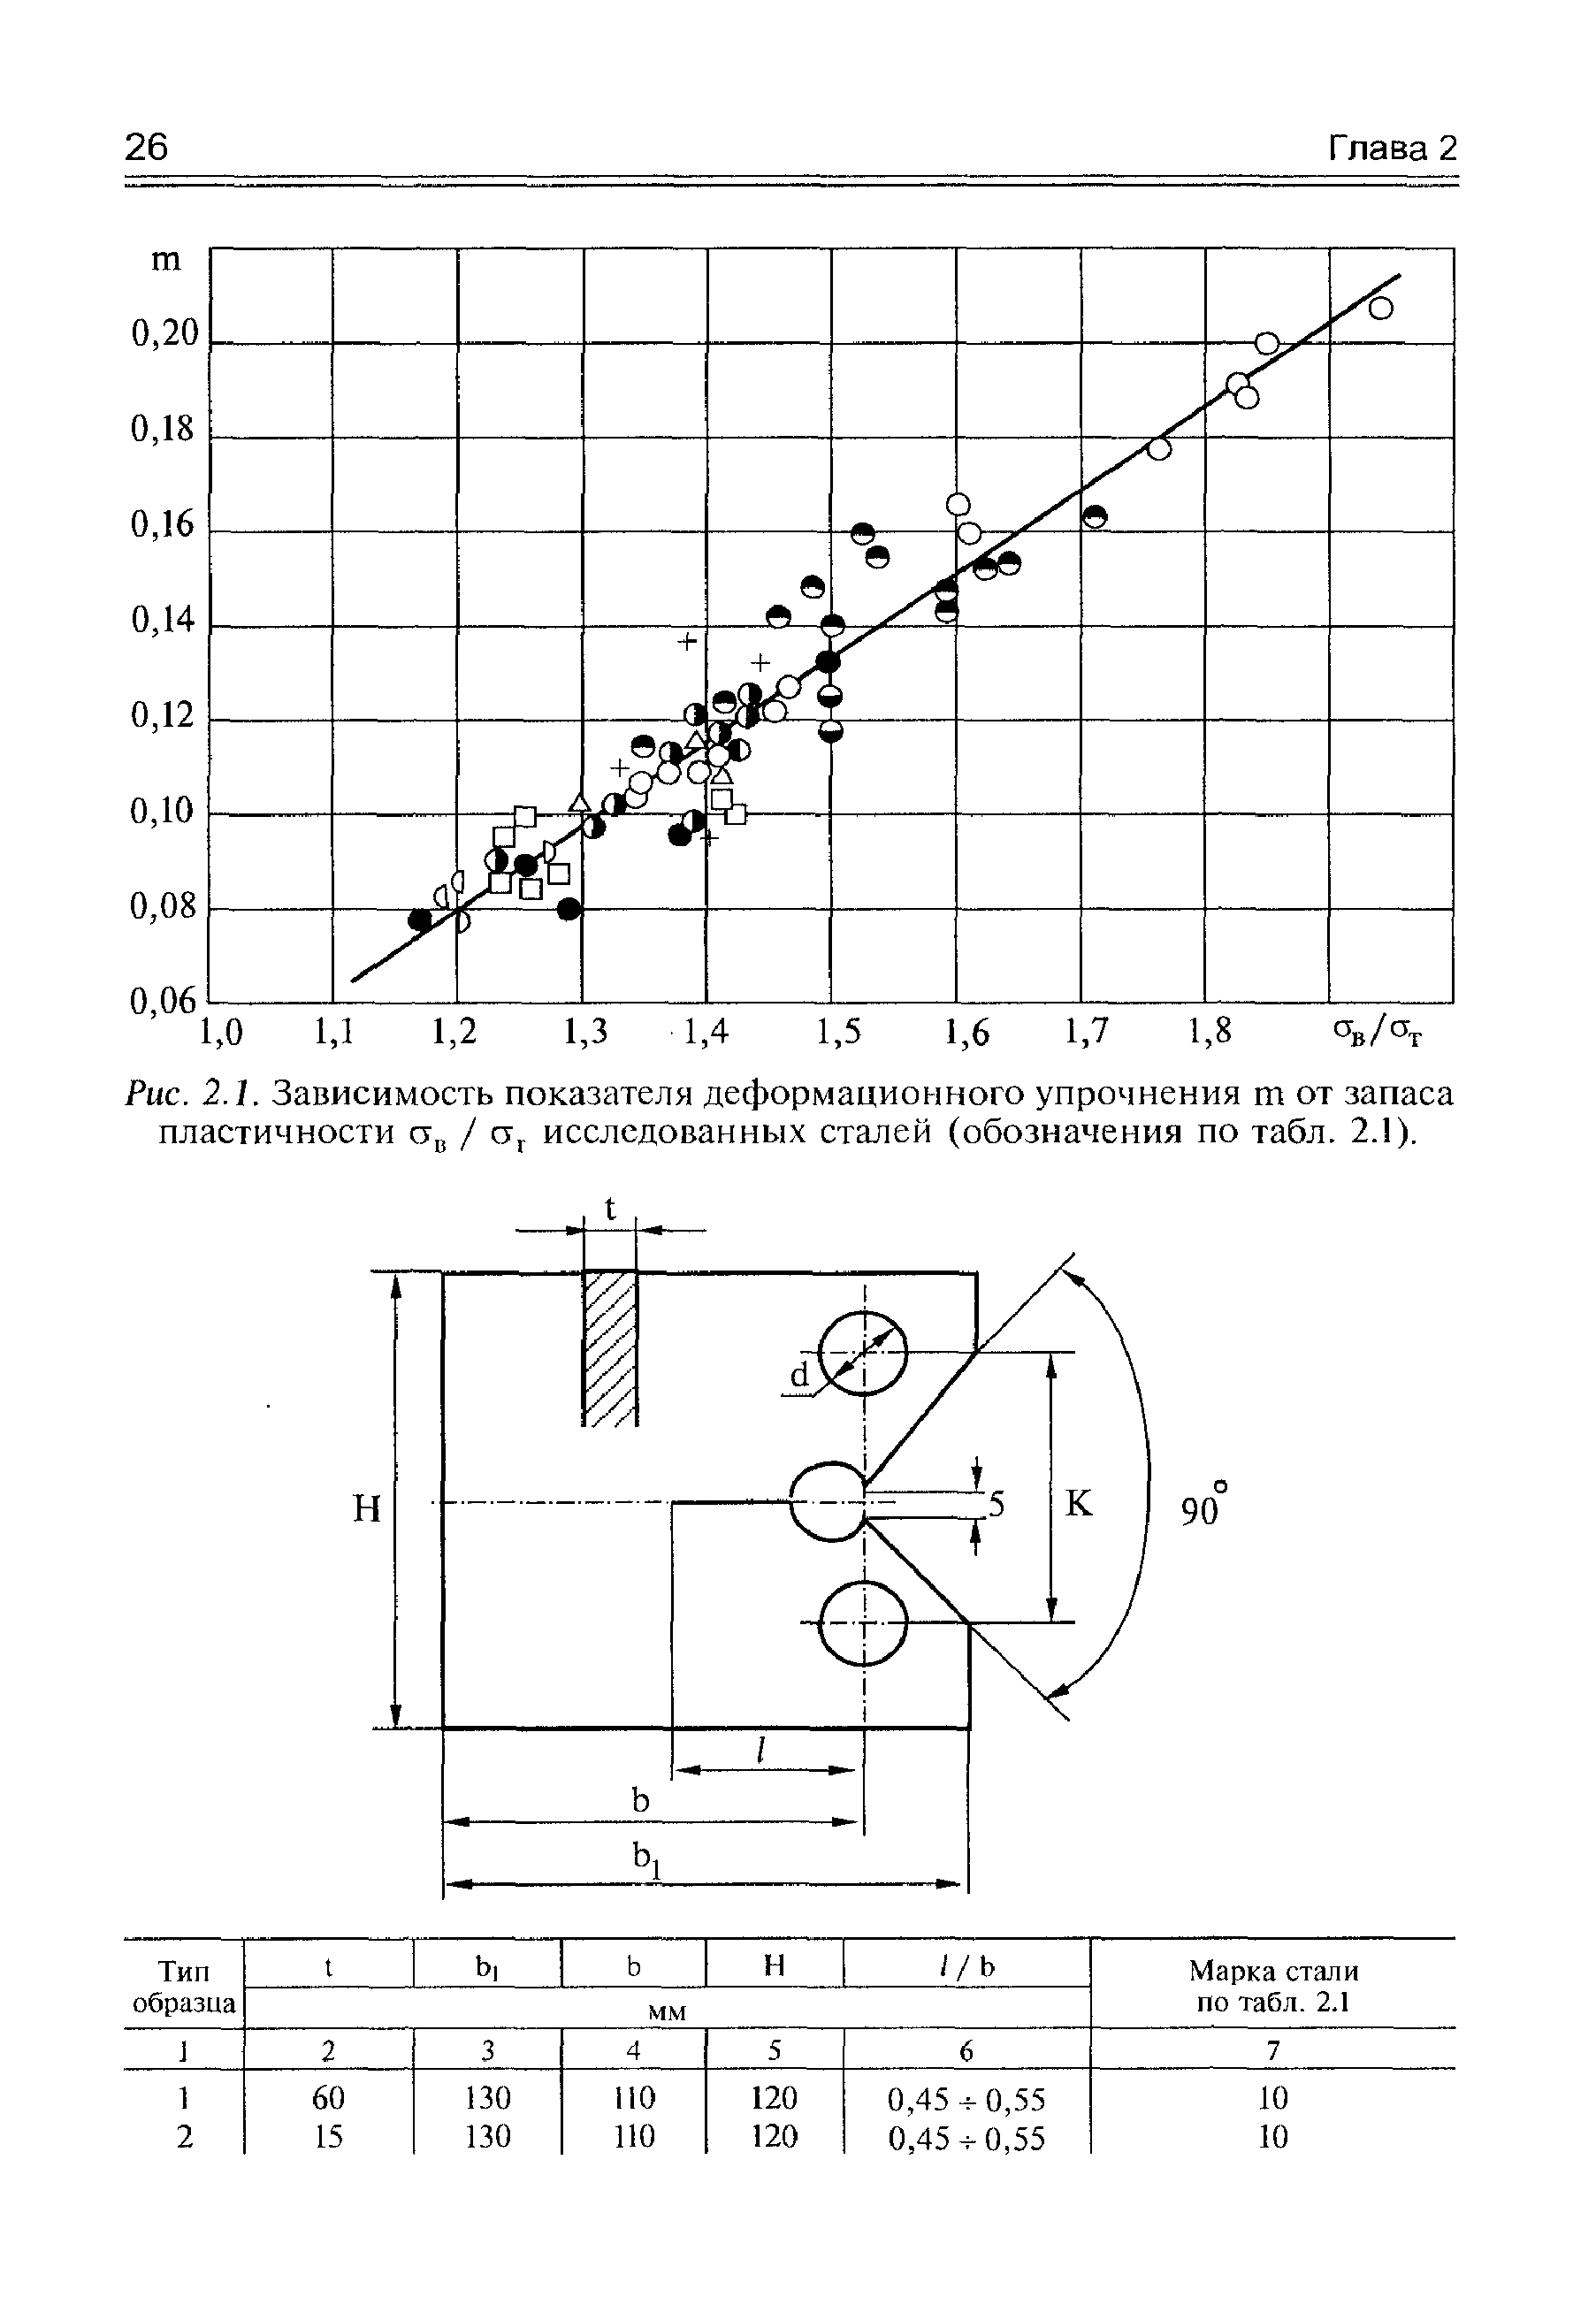 Рис. 2.1. Зависимость показателя деформационного упрочнения т от <a href="/info/339646">запаса пластичности</a> исследованных сталей (обозначения по табл. 2.1).
